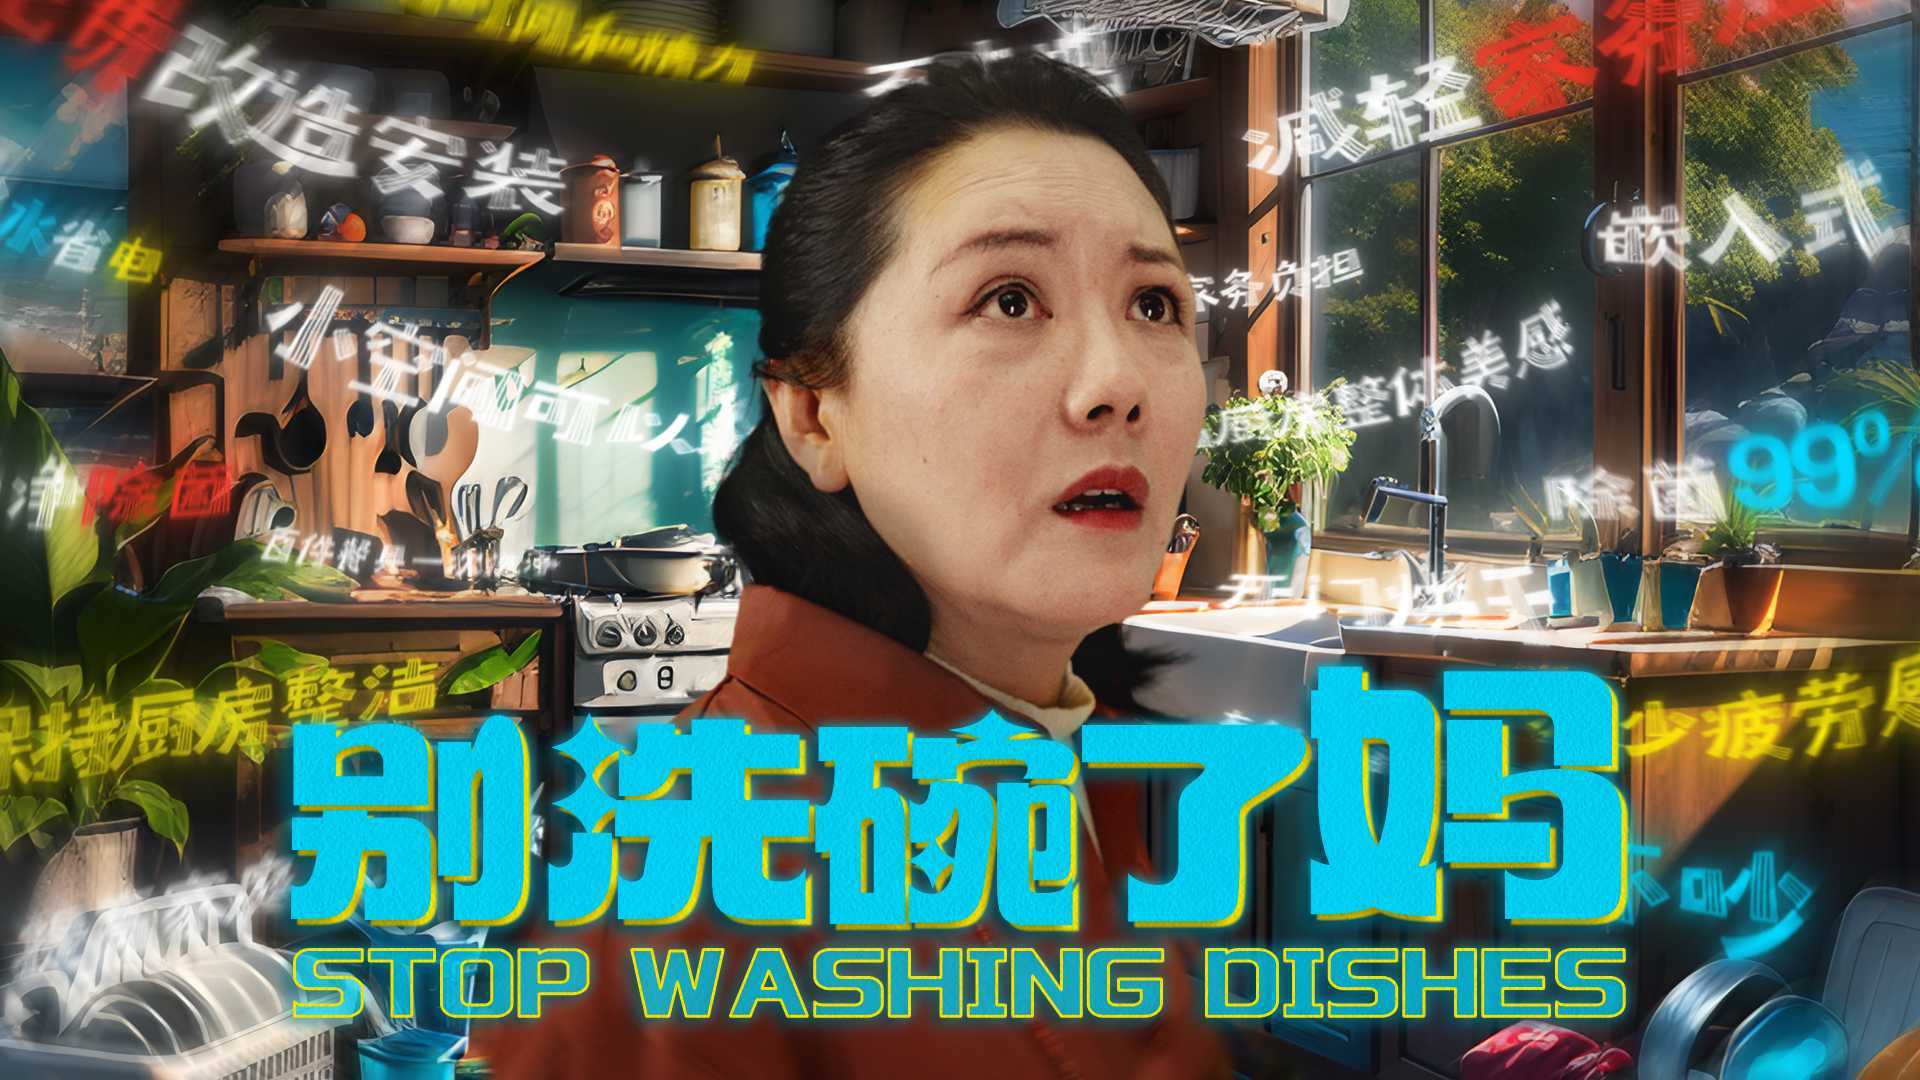 京东 915洗碗机节 别洗碗了妈 Dir